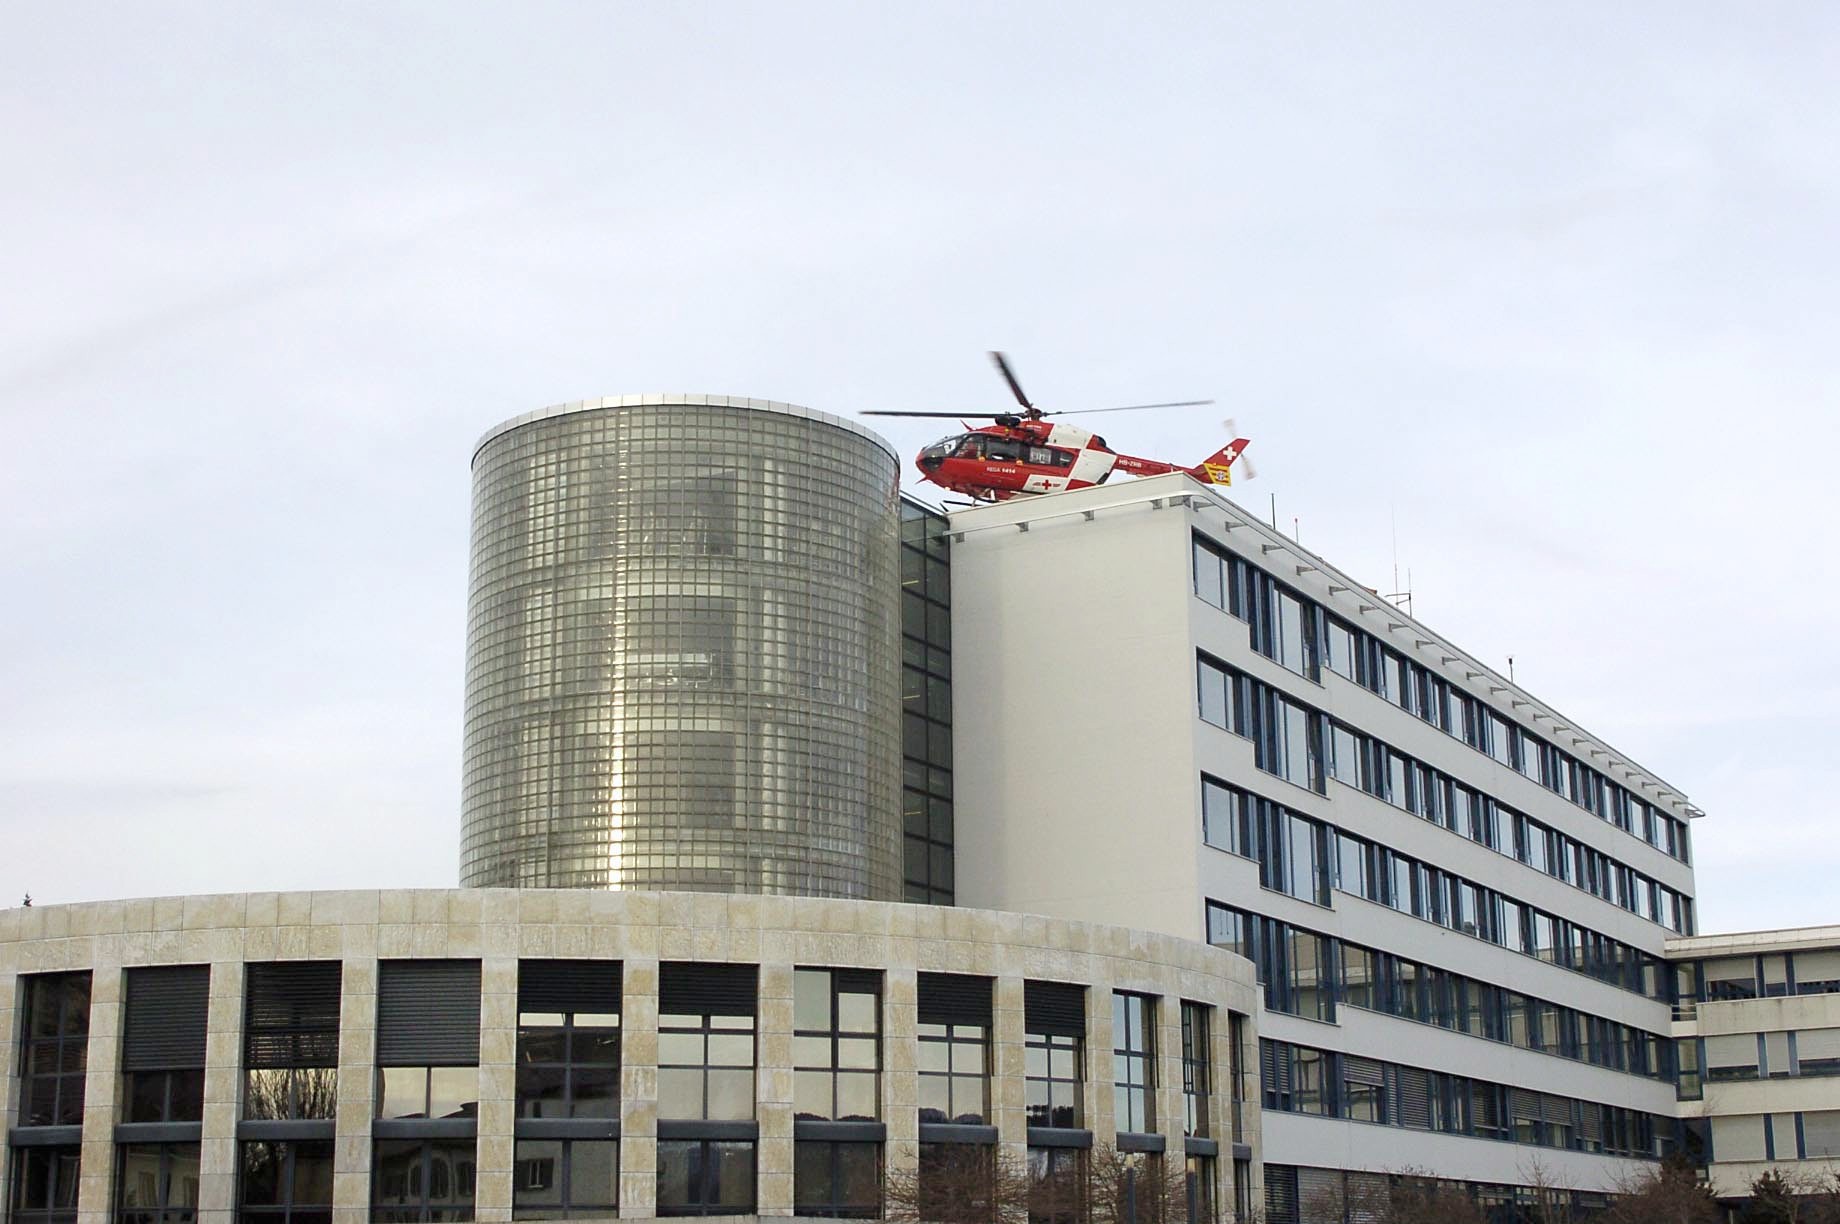 L'hélicoptère de la Rega a dû se poser à l'hôpital de La Chaux-de-Fonds plutôt qu'en pleine ville.